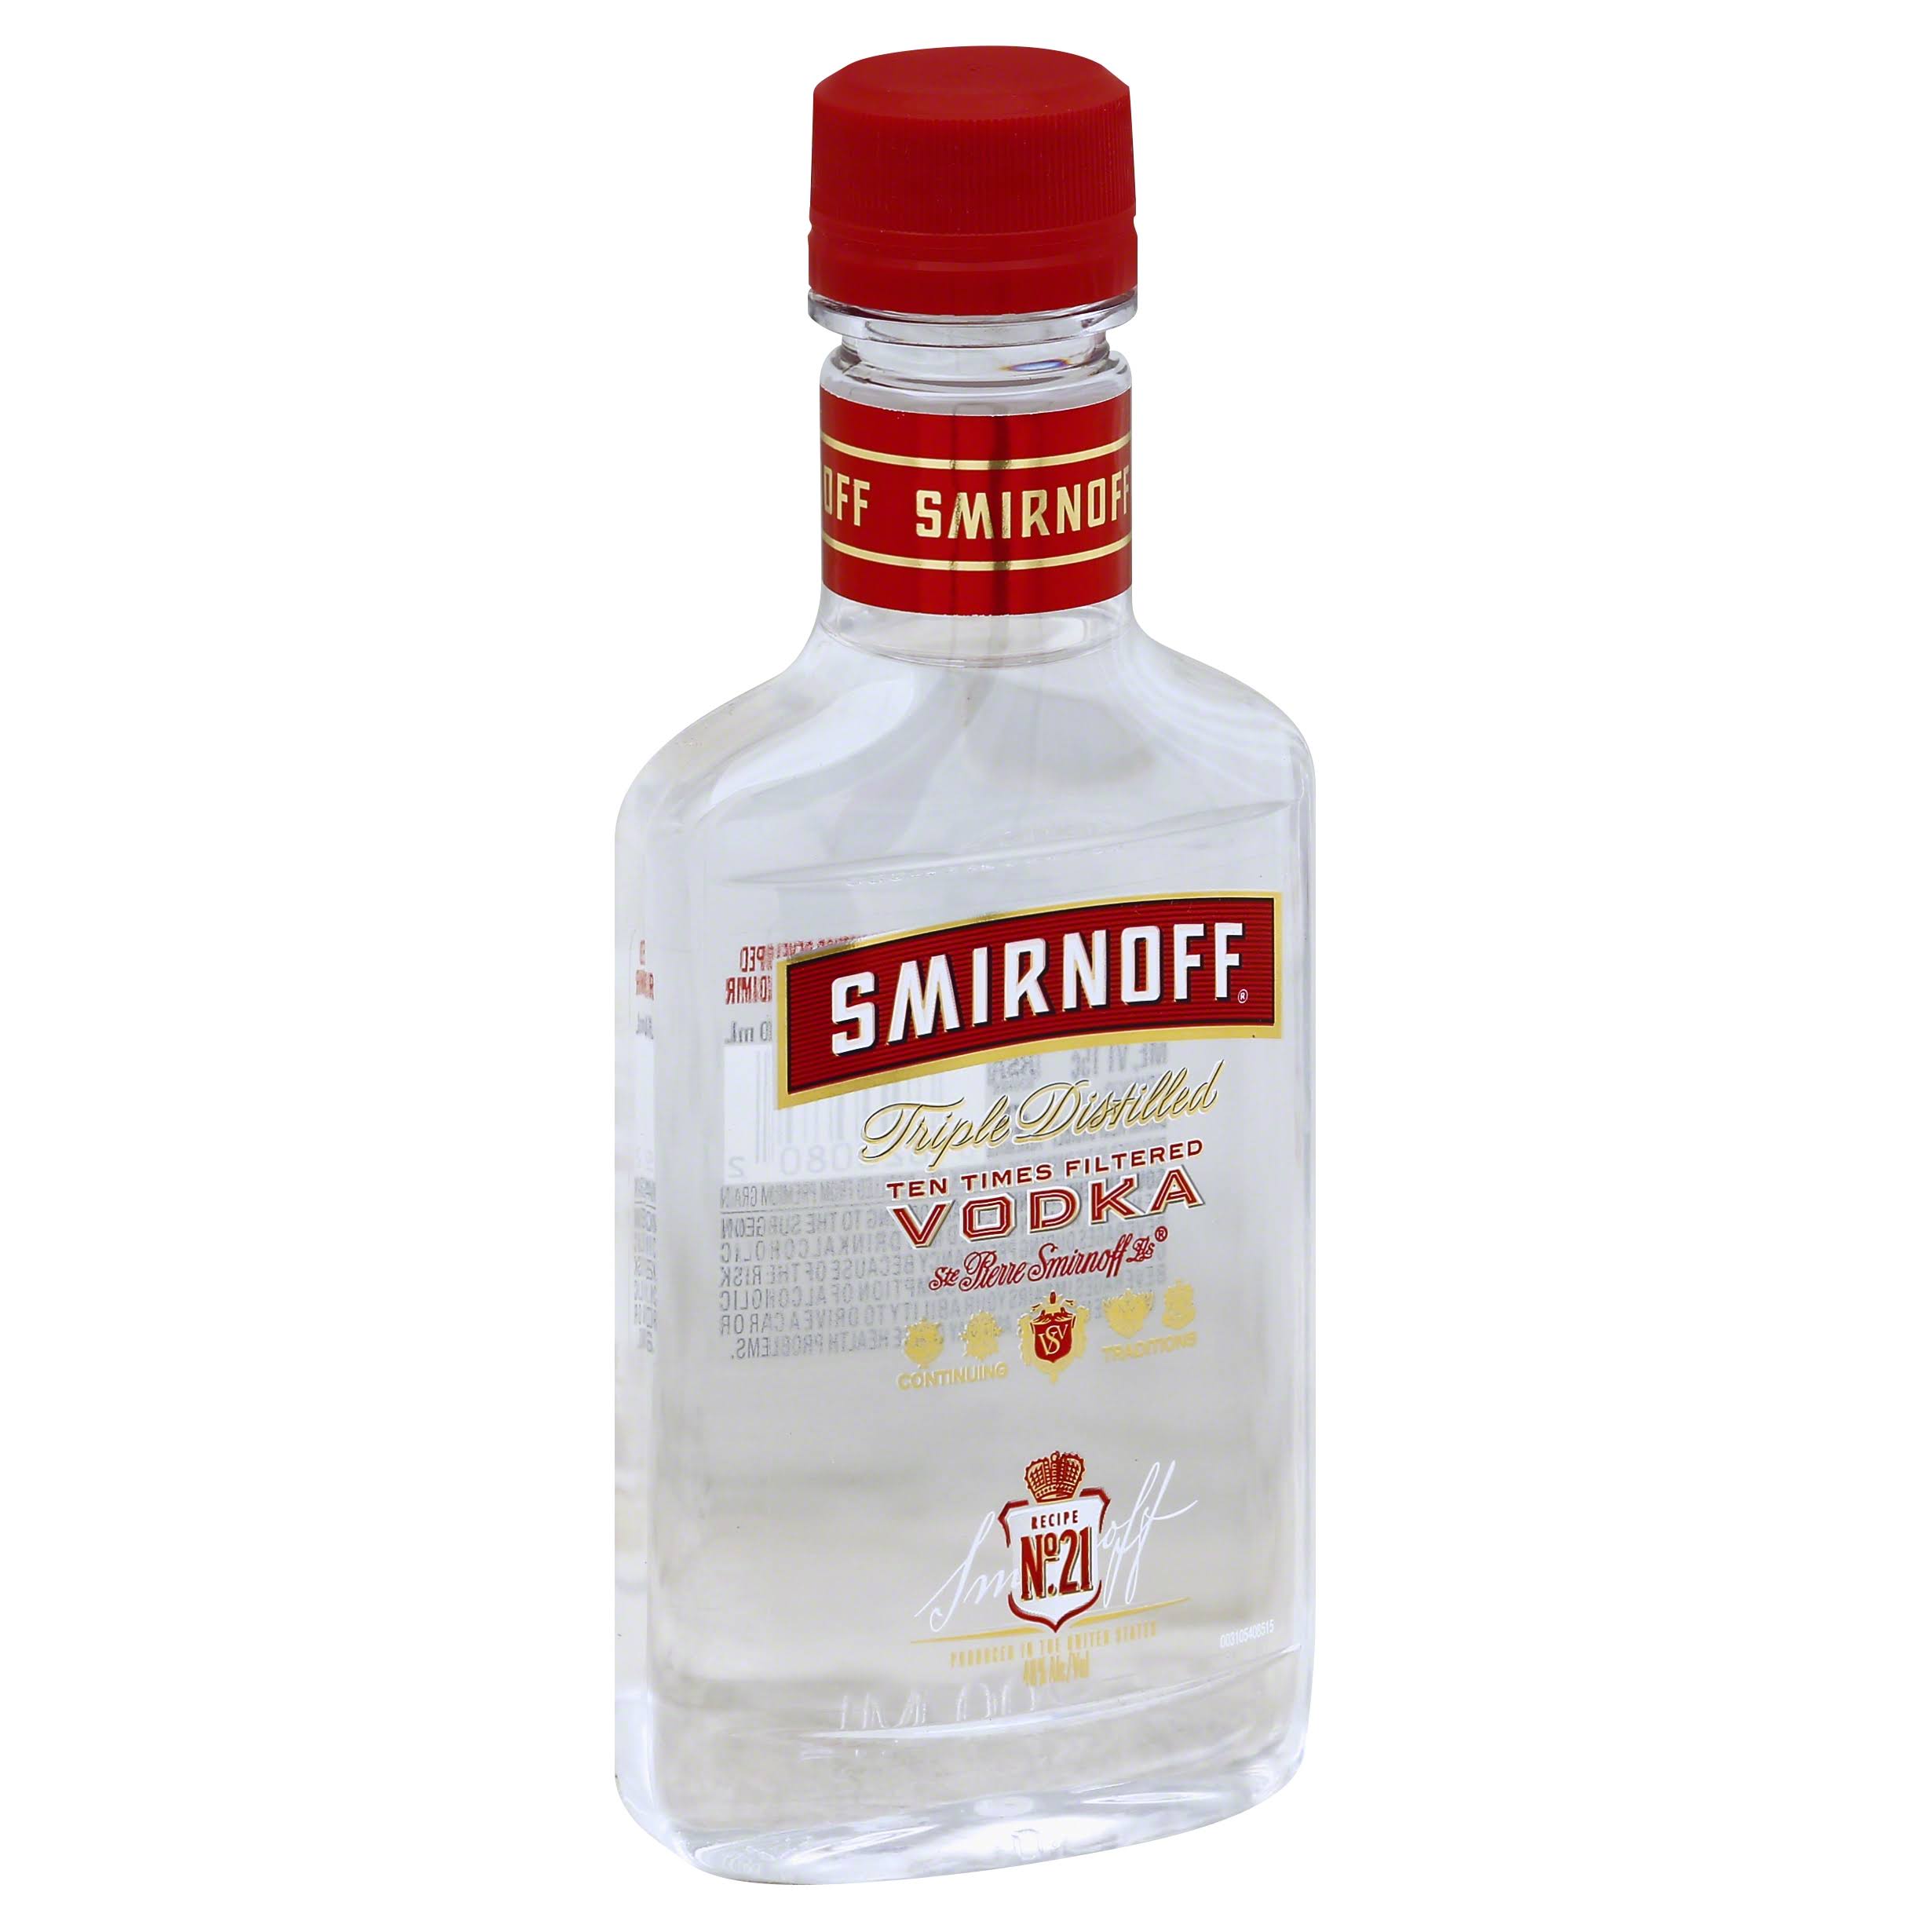 Smirnoff Vodka, Triple Distilled, Recipe No. 21 - 200 ml